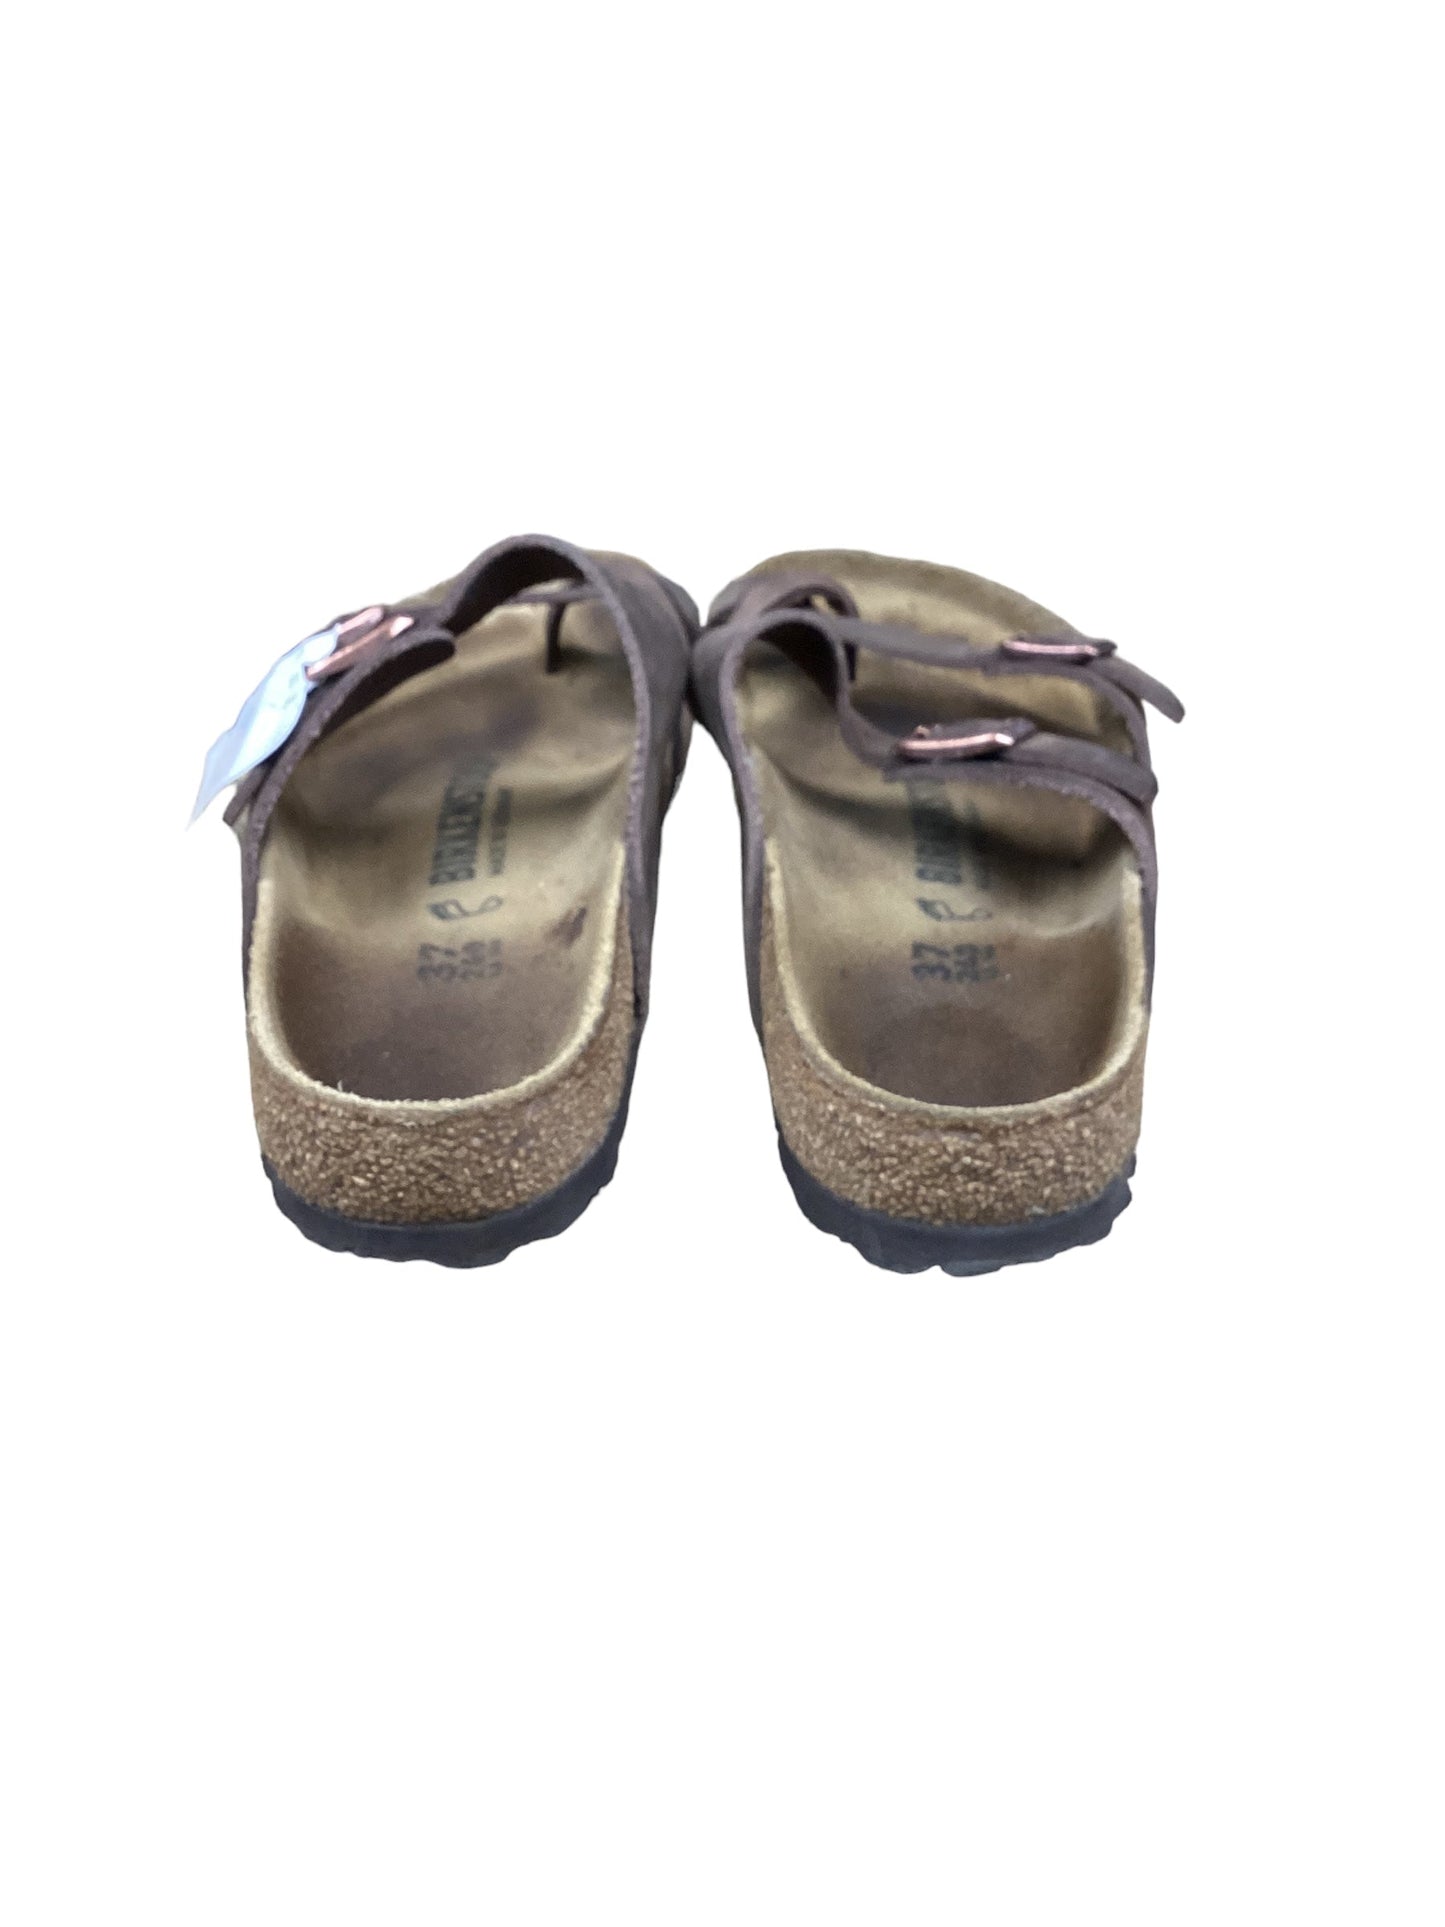 Brown Sandals Flats Birkenstock, Size 6